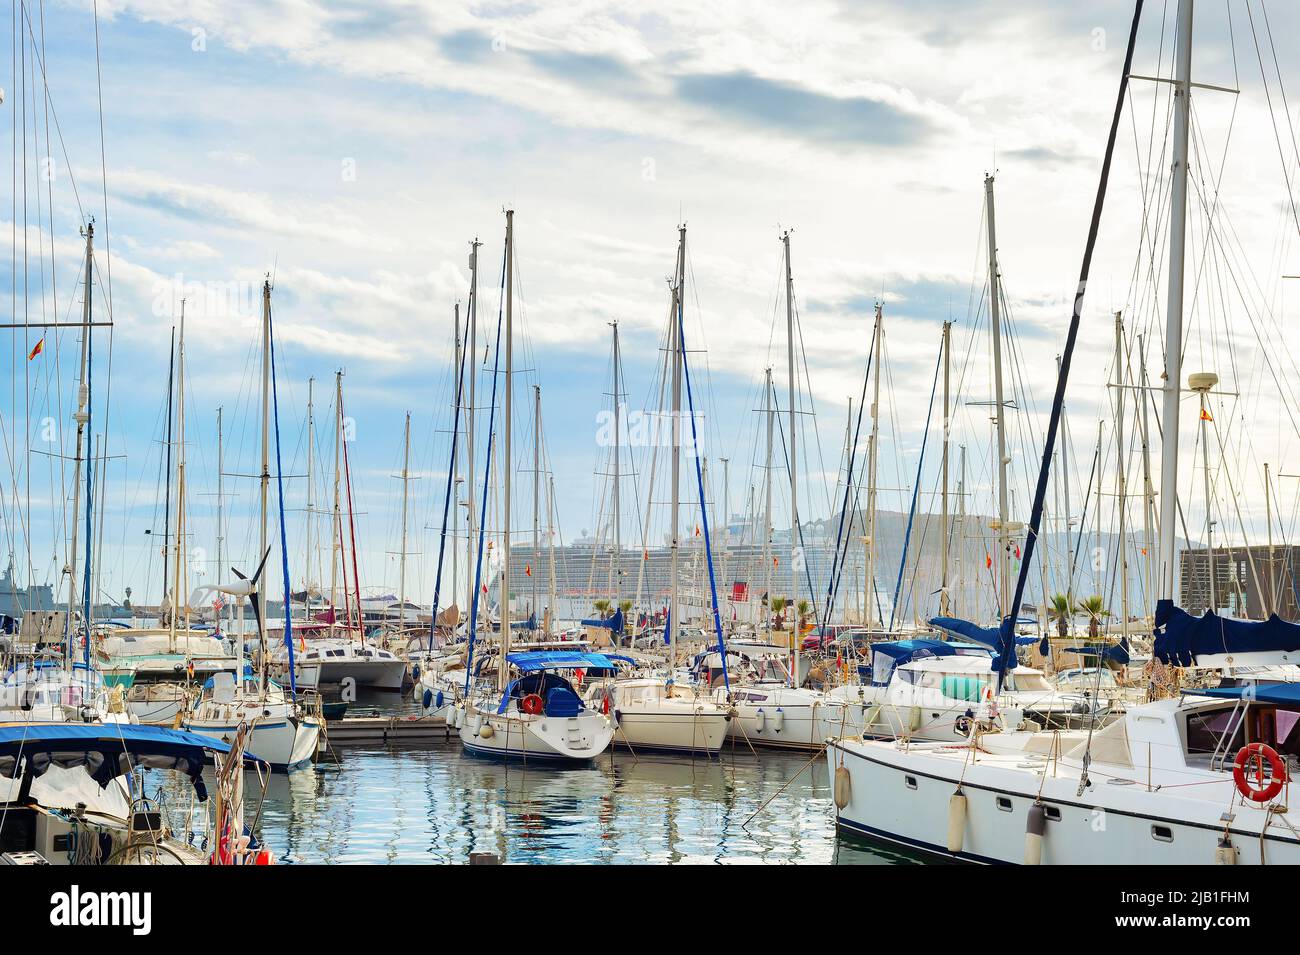 Puerto deportivo con yates de lujo amarrados, crucero en el fondo, cielo nublado. Sanremo, Italia Foto de stock